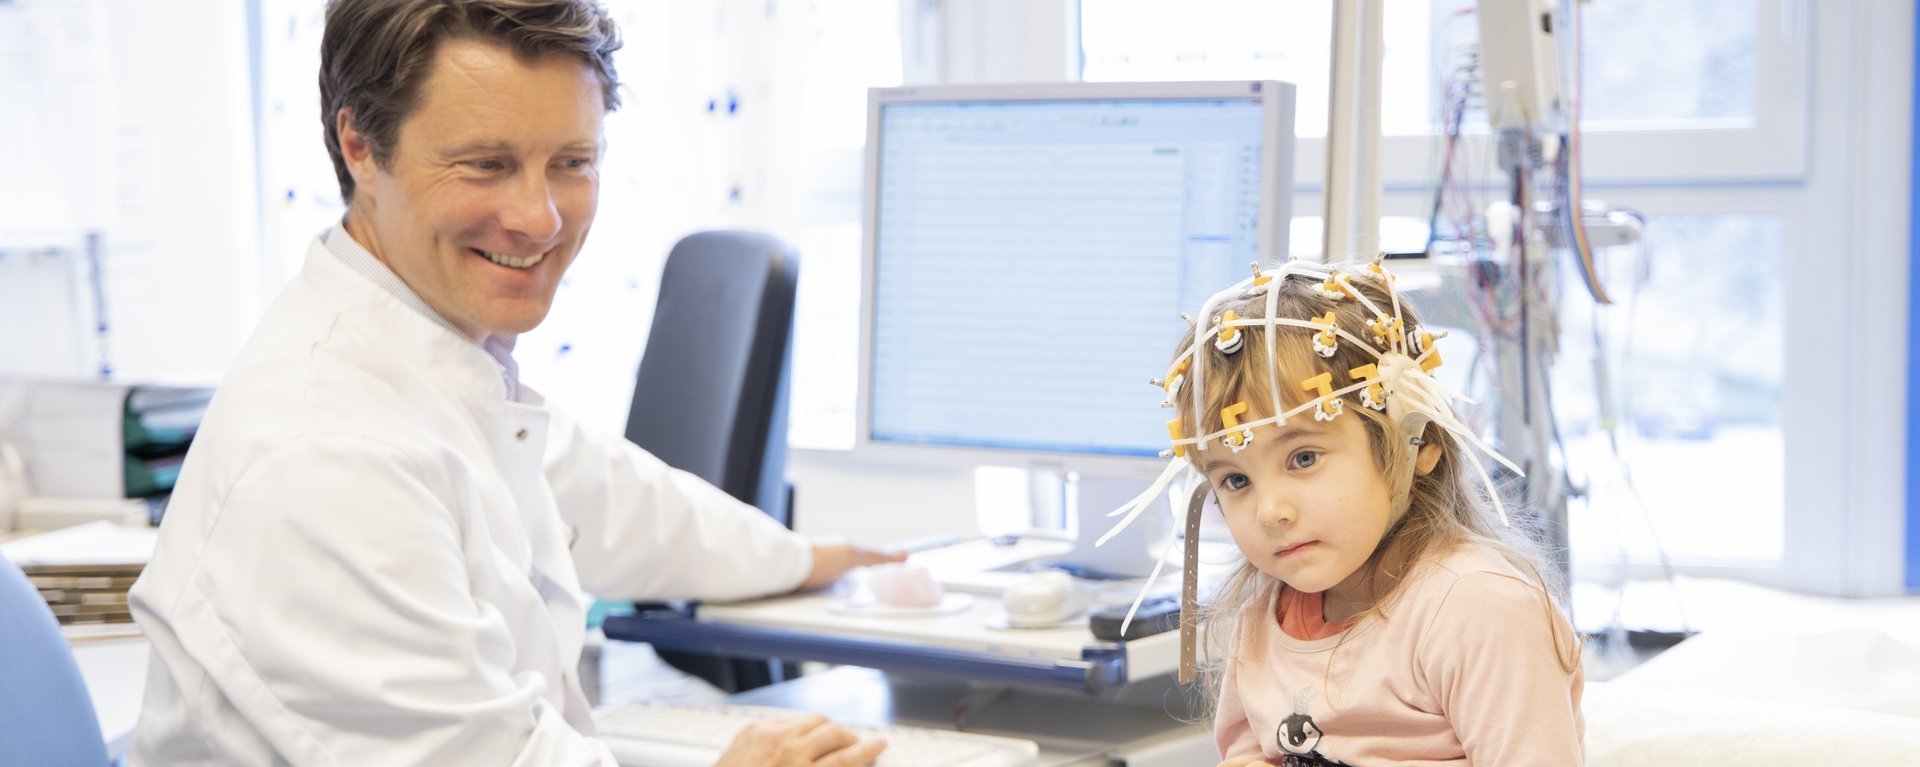 Kinderarzt untersucht ein Kind im behandlungszimmer und tippt etwas in seinen Coumputer